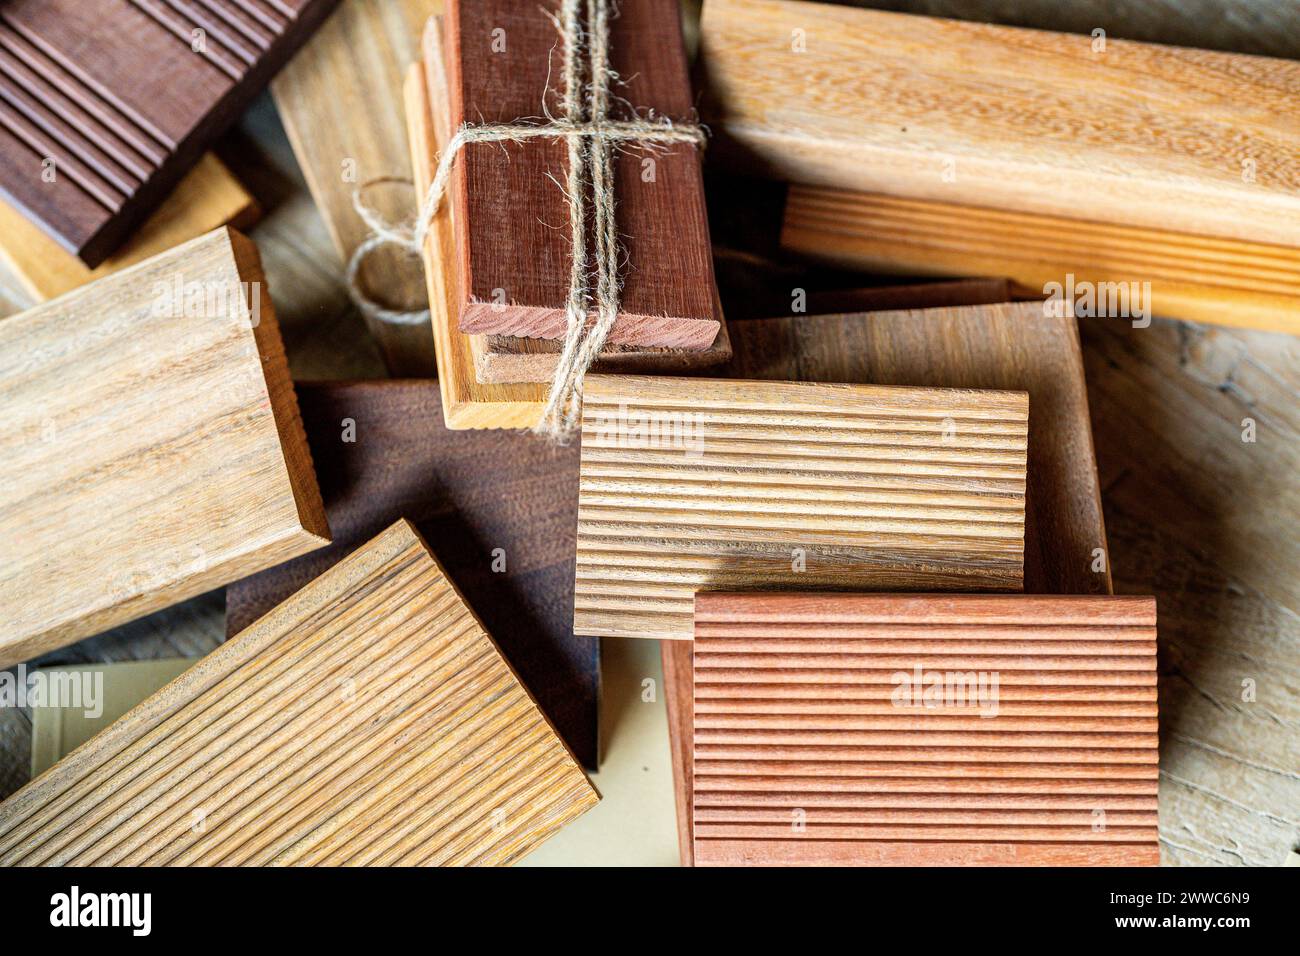 Variazione di campioni di legno sulla scrivania Foto Stock